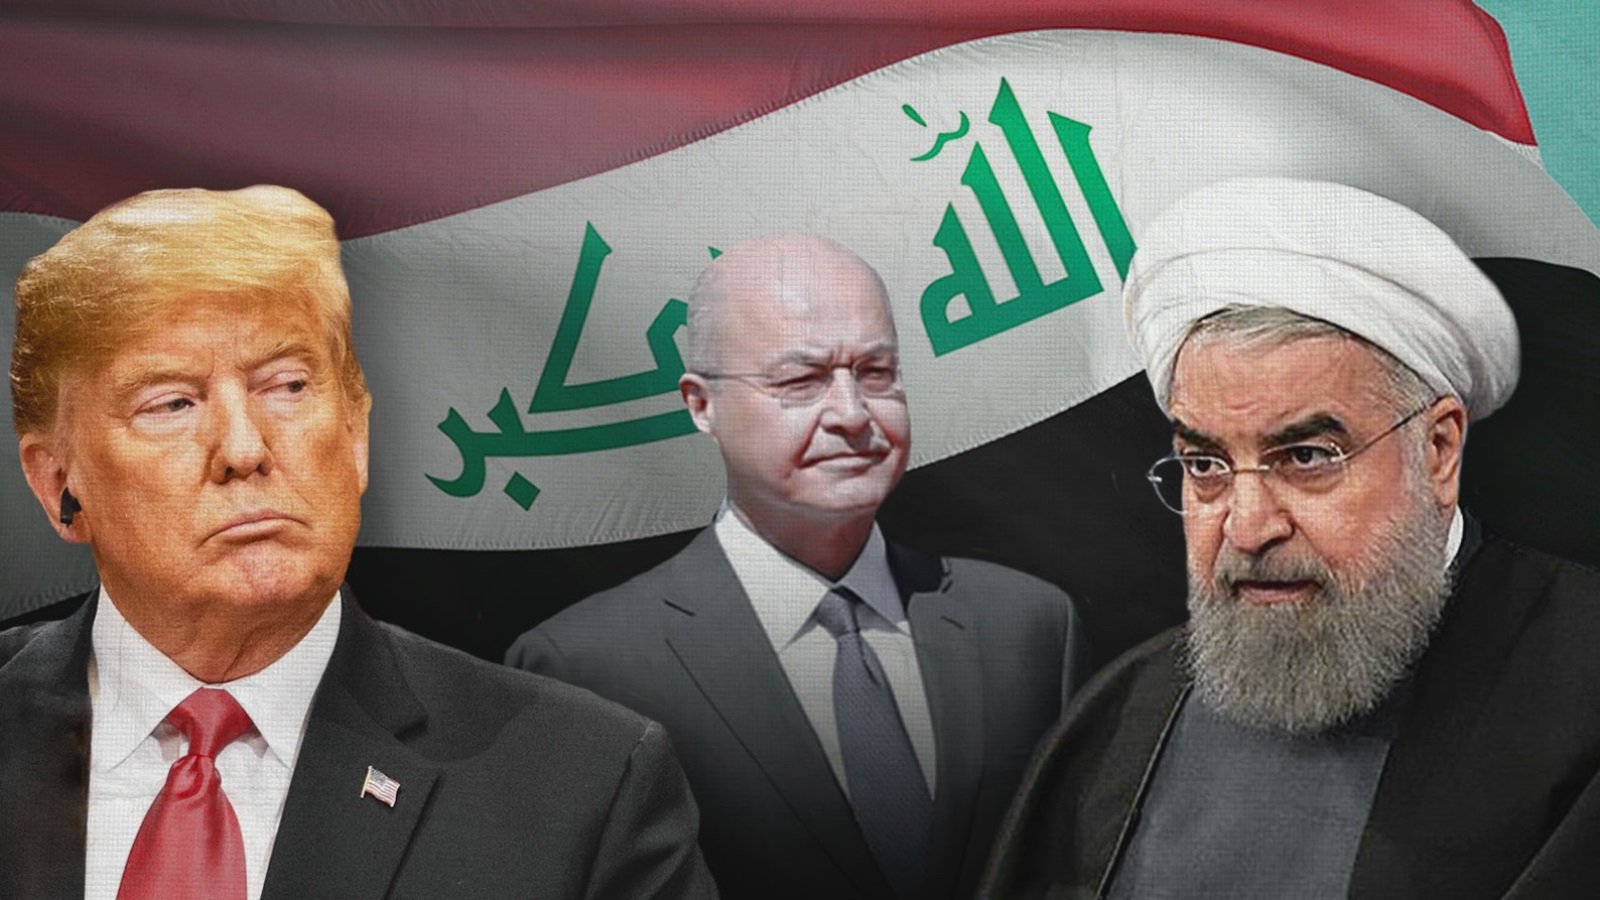 القوى الخارجية الأكثر تأثيرا على الساحة العراقية، وهي إيران والسعودية والولايات المتحدة، تتفق ضمنيا على أن بقاء الحكومة الحالية هو الخيار الأفضل لمصالحهم جميعا